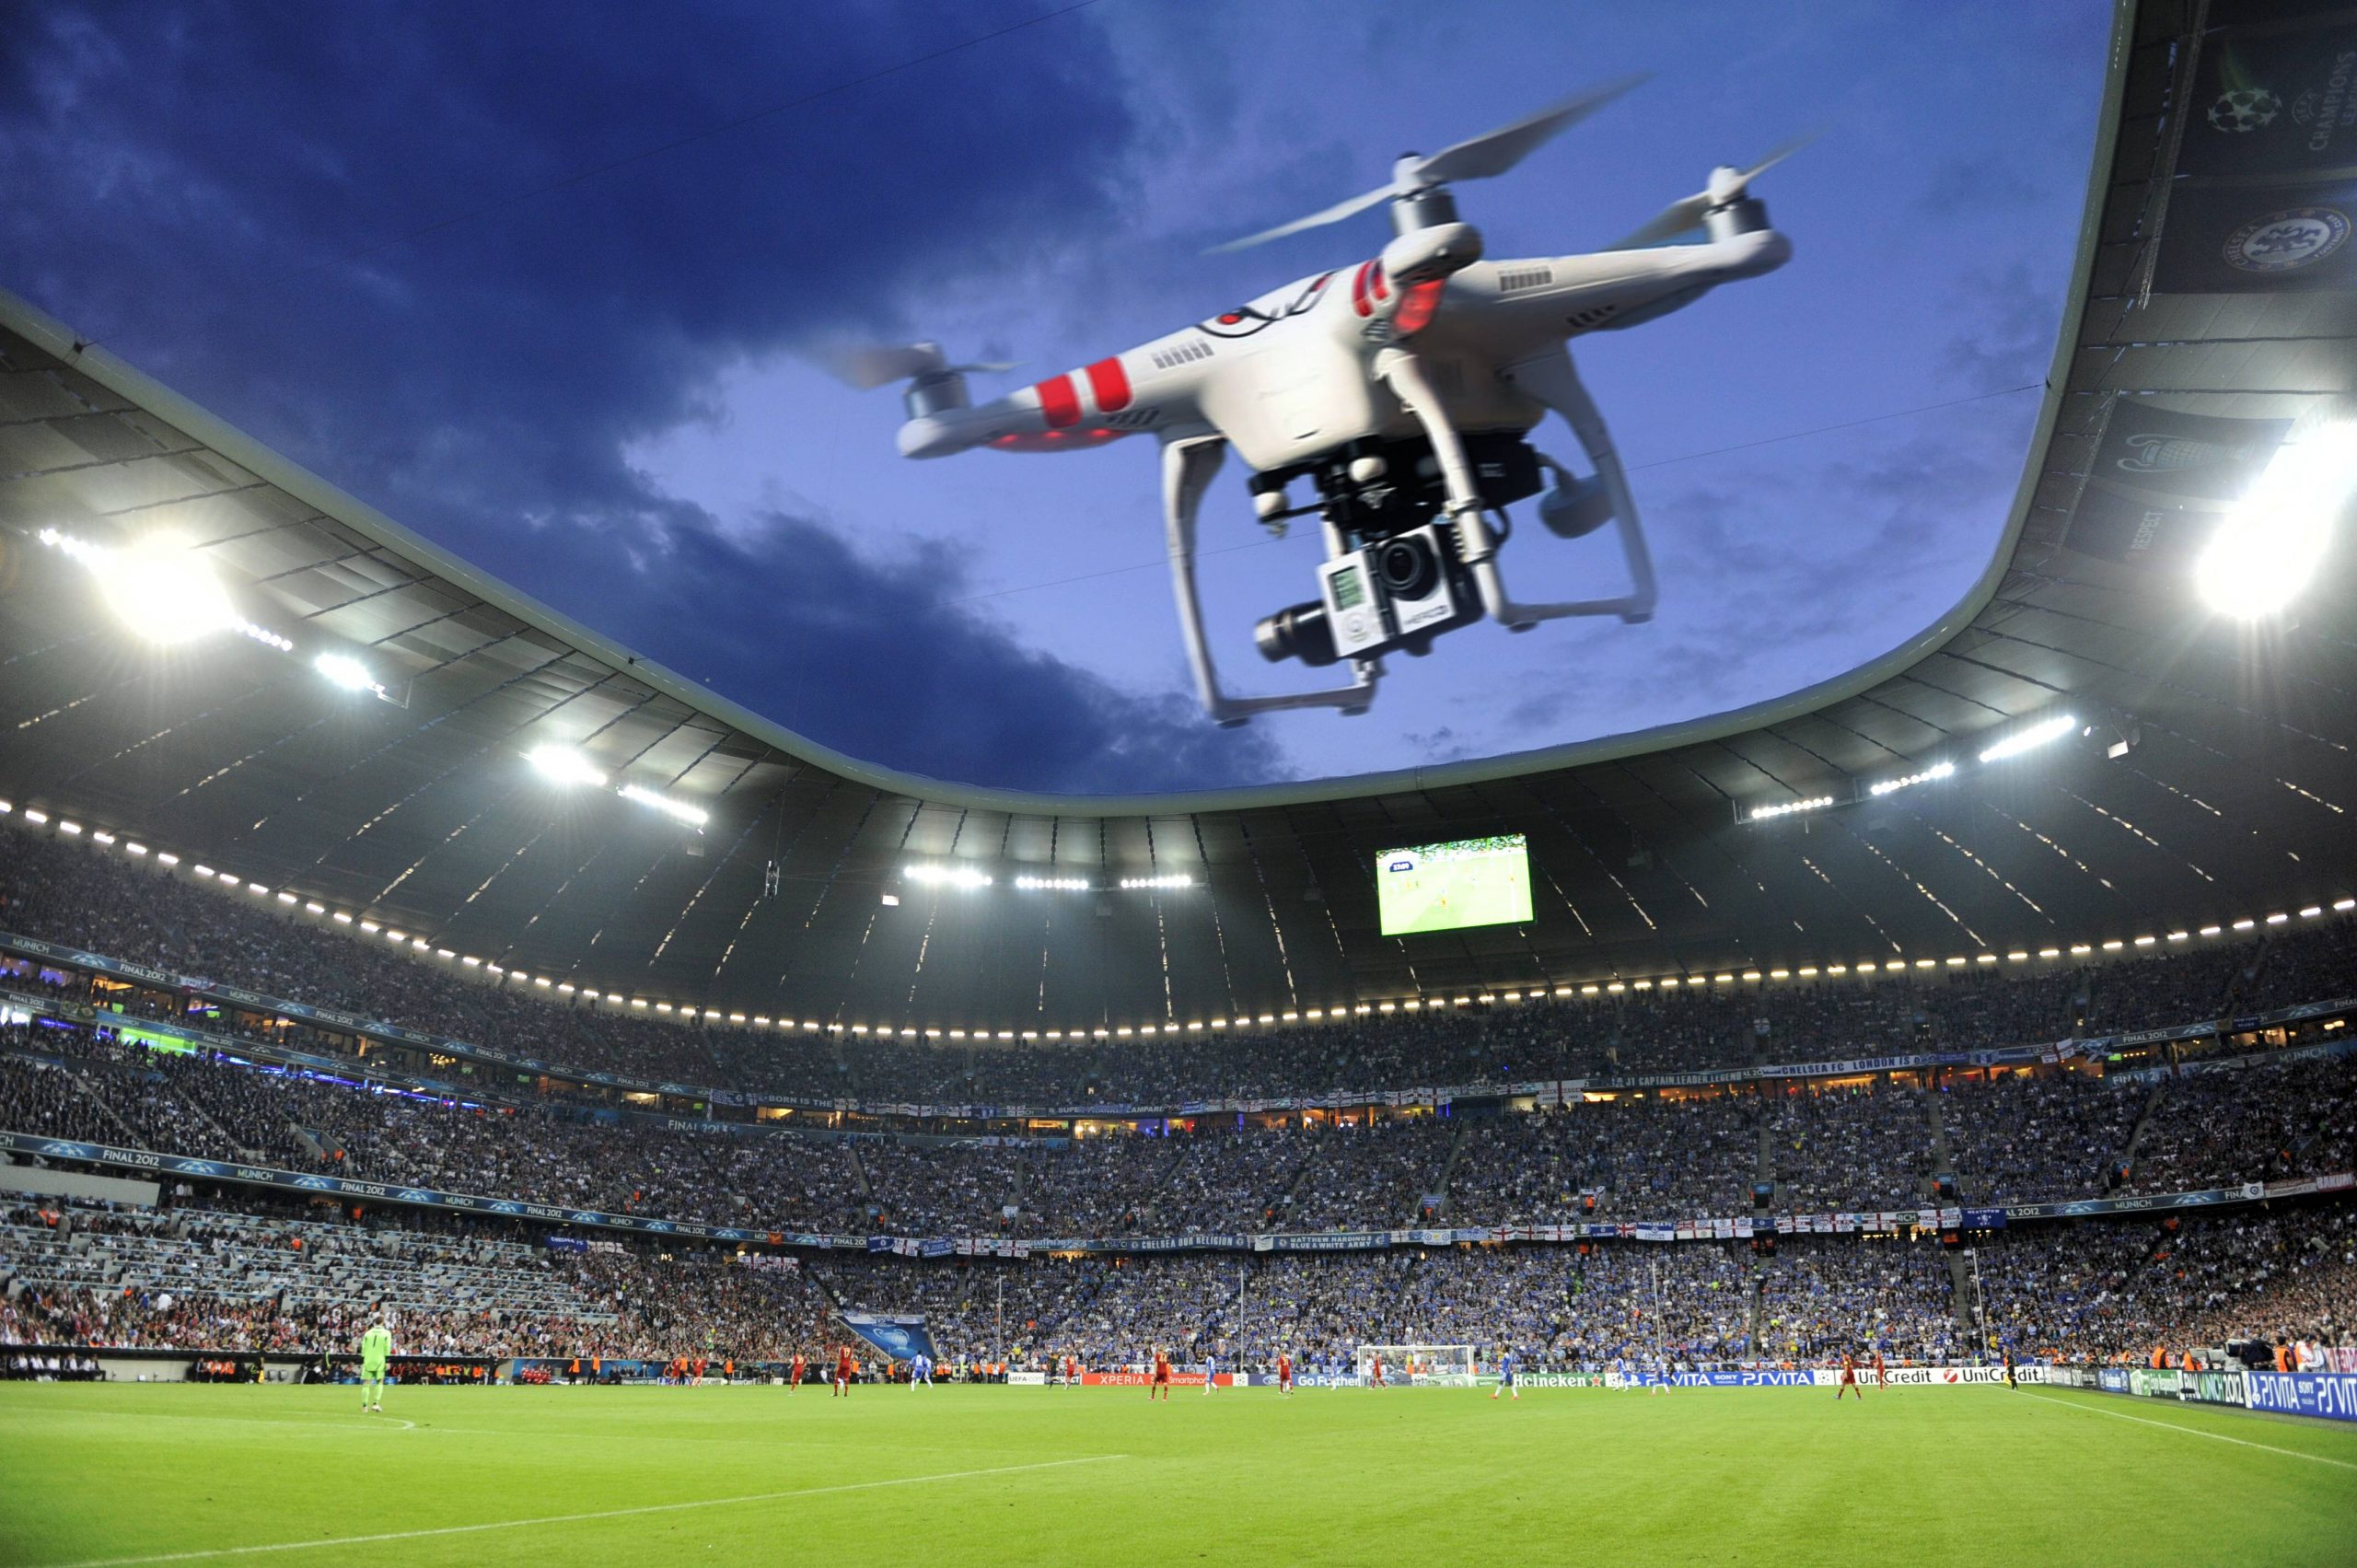 Ein Drohnenangriff auf Fußballstadien gilt unter Sicherheitsexperten als möglich